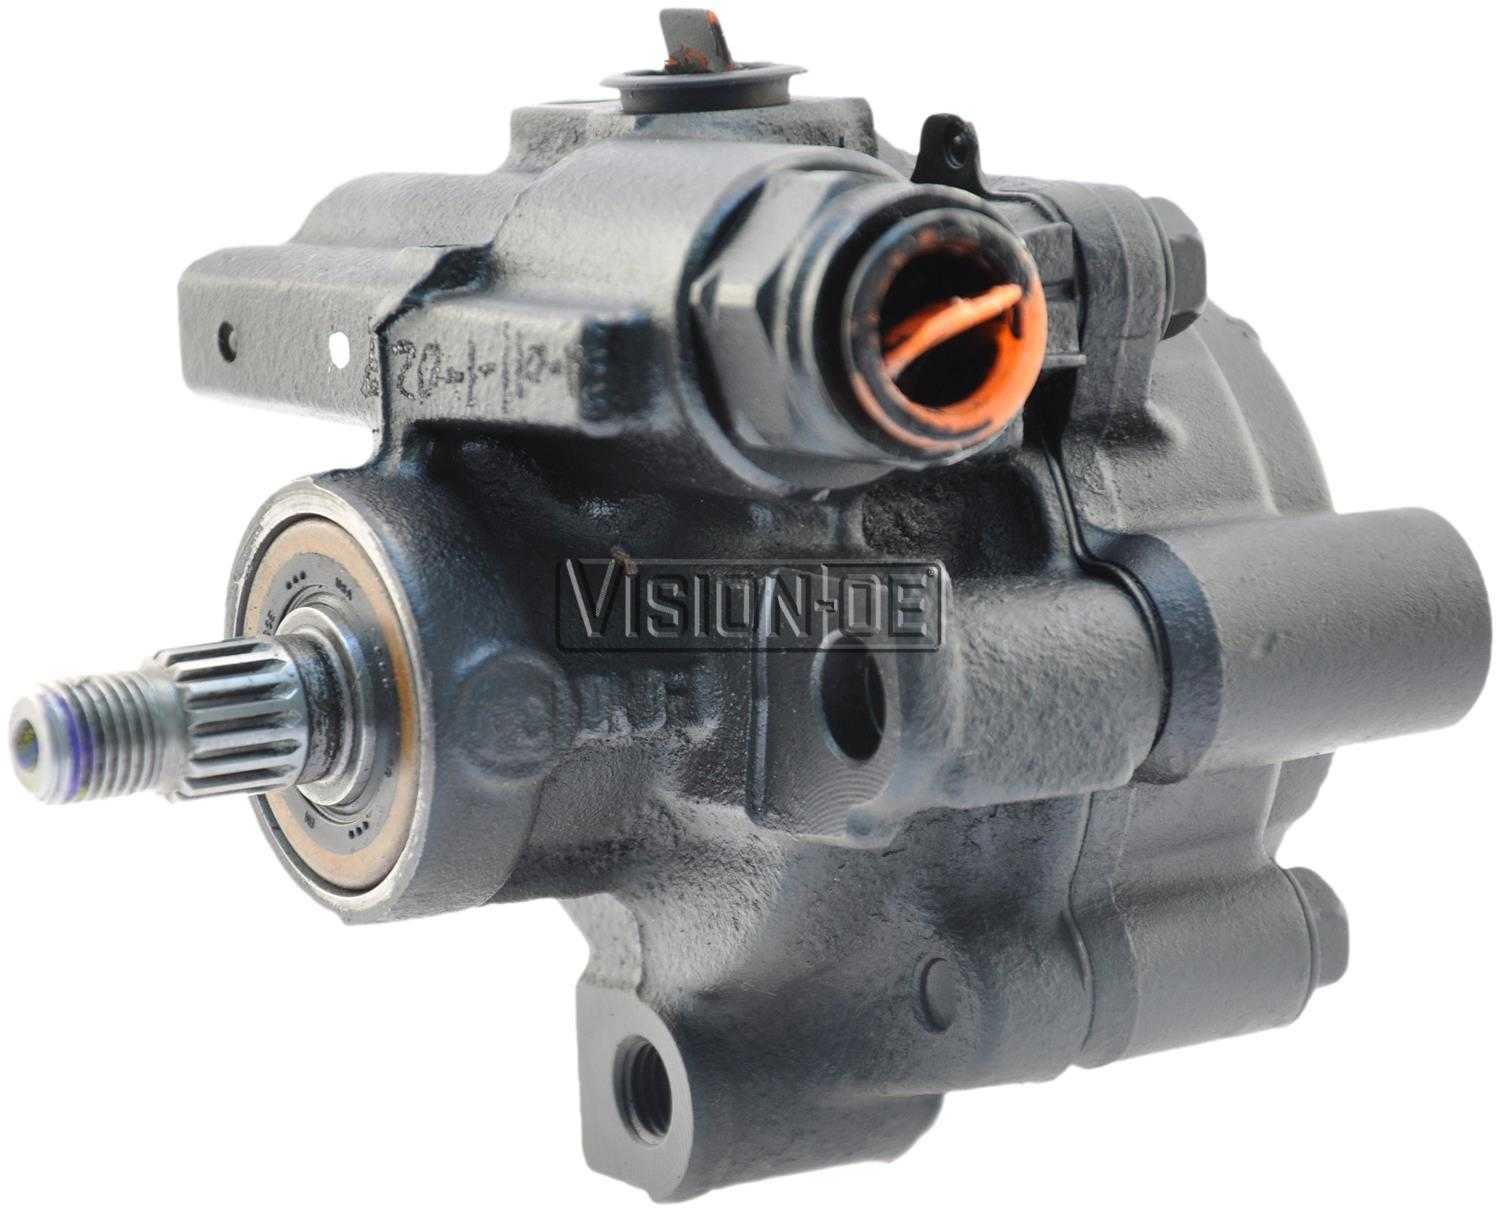 VISION-OE - Reman Power Steering Pump - VOE 990-0442